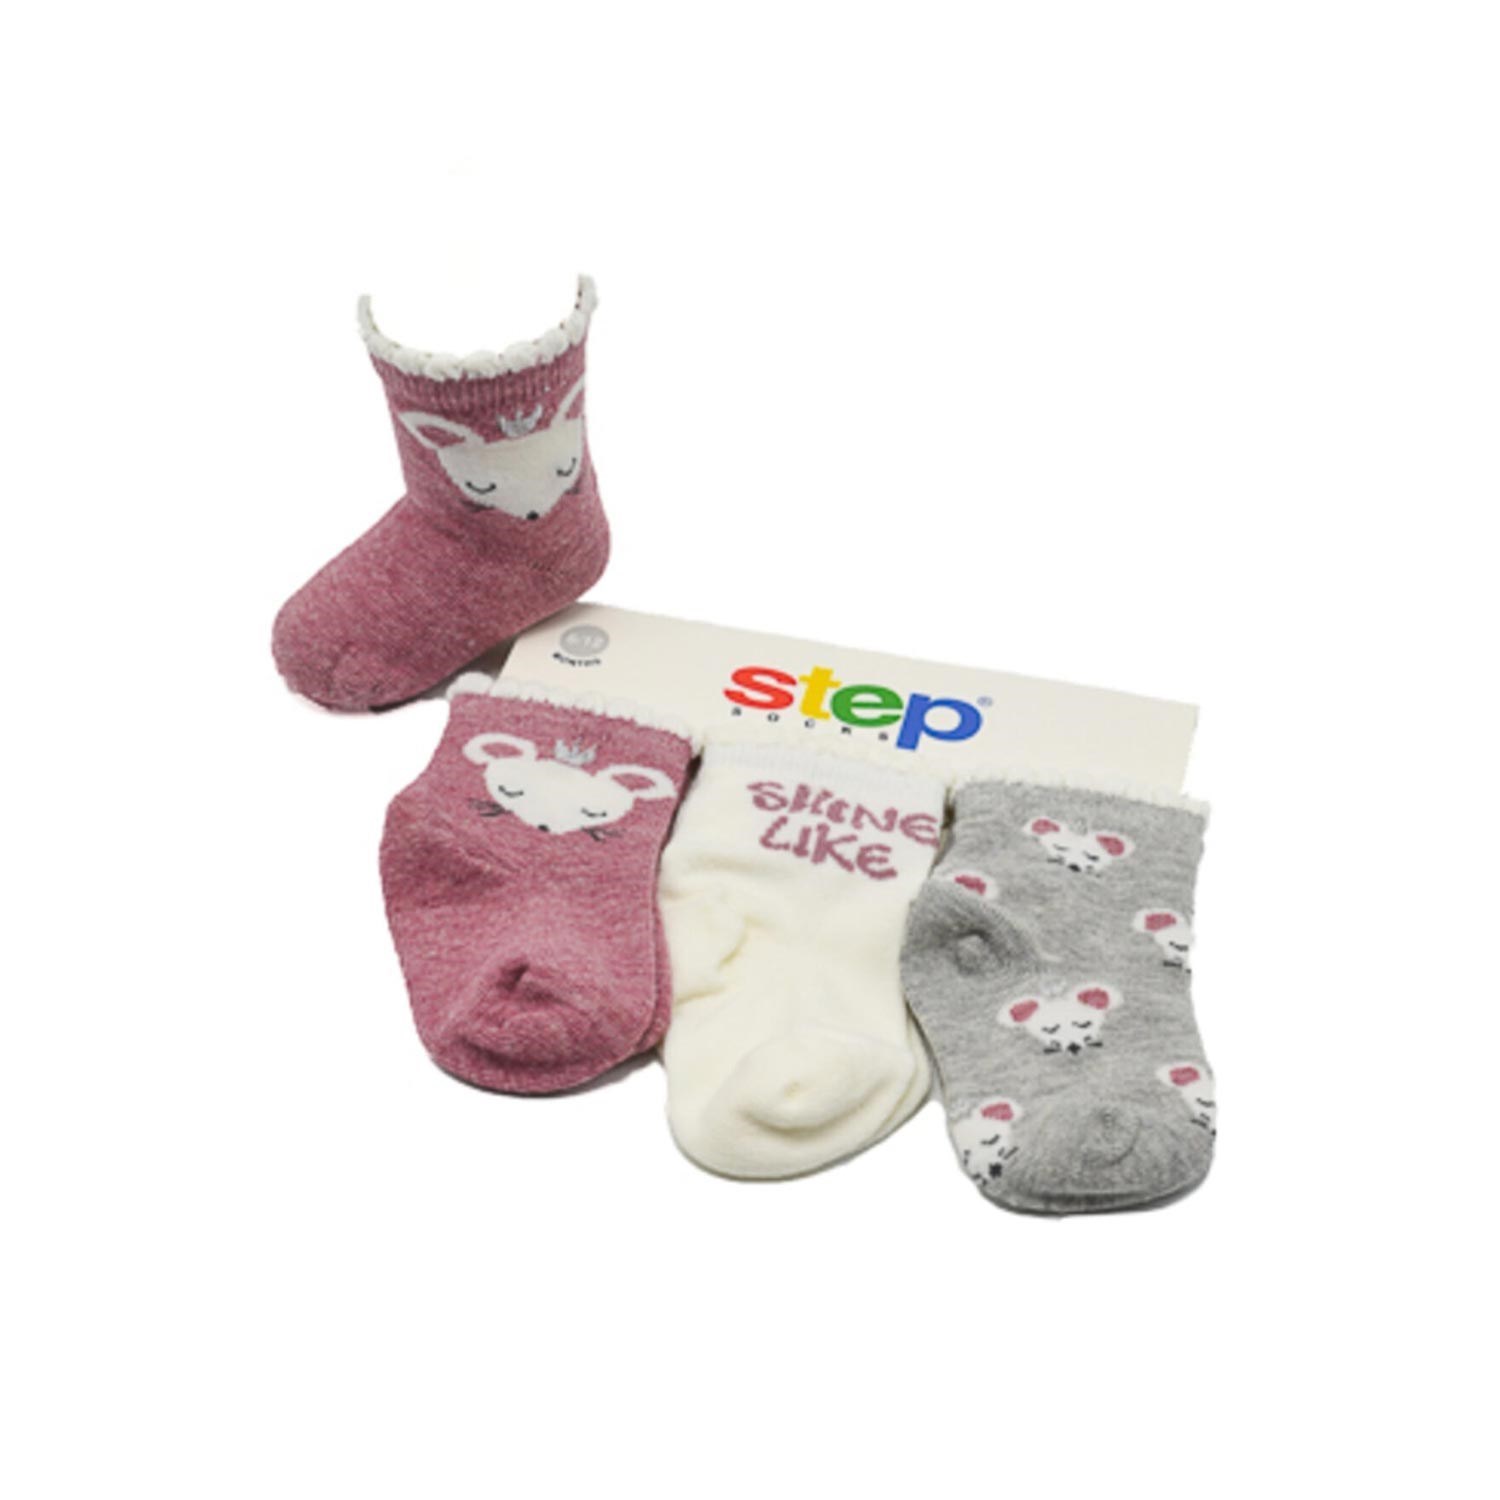 Step Taçlı Mouse 3'lü Soket Bebek Çorabı 10033 Gül Kurusu